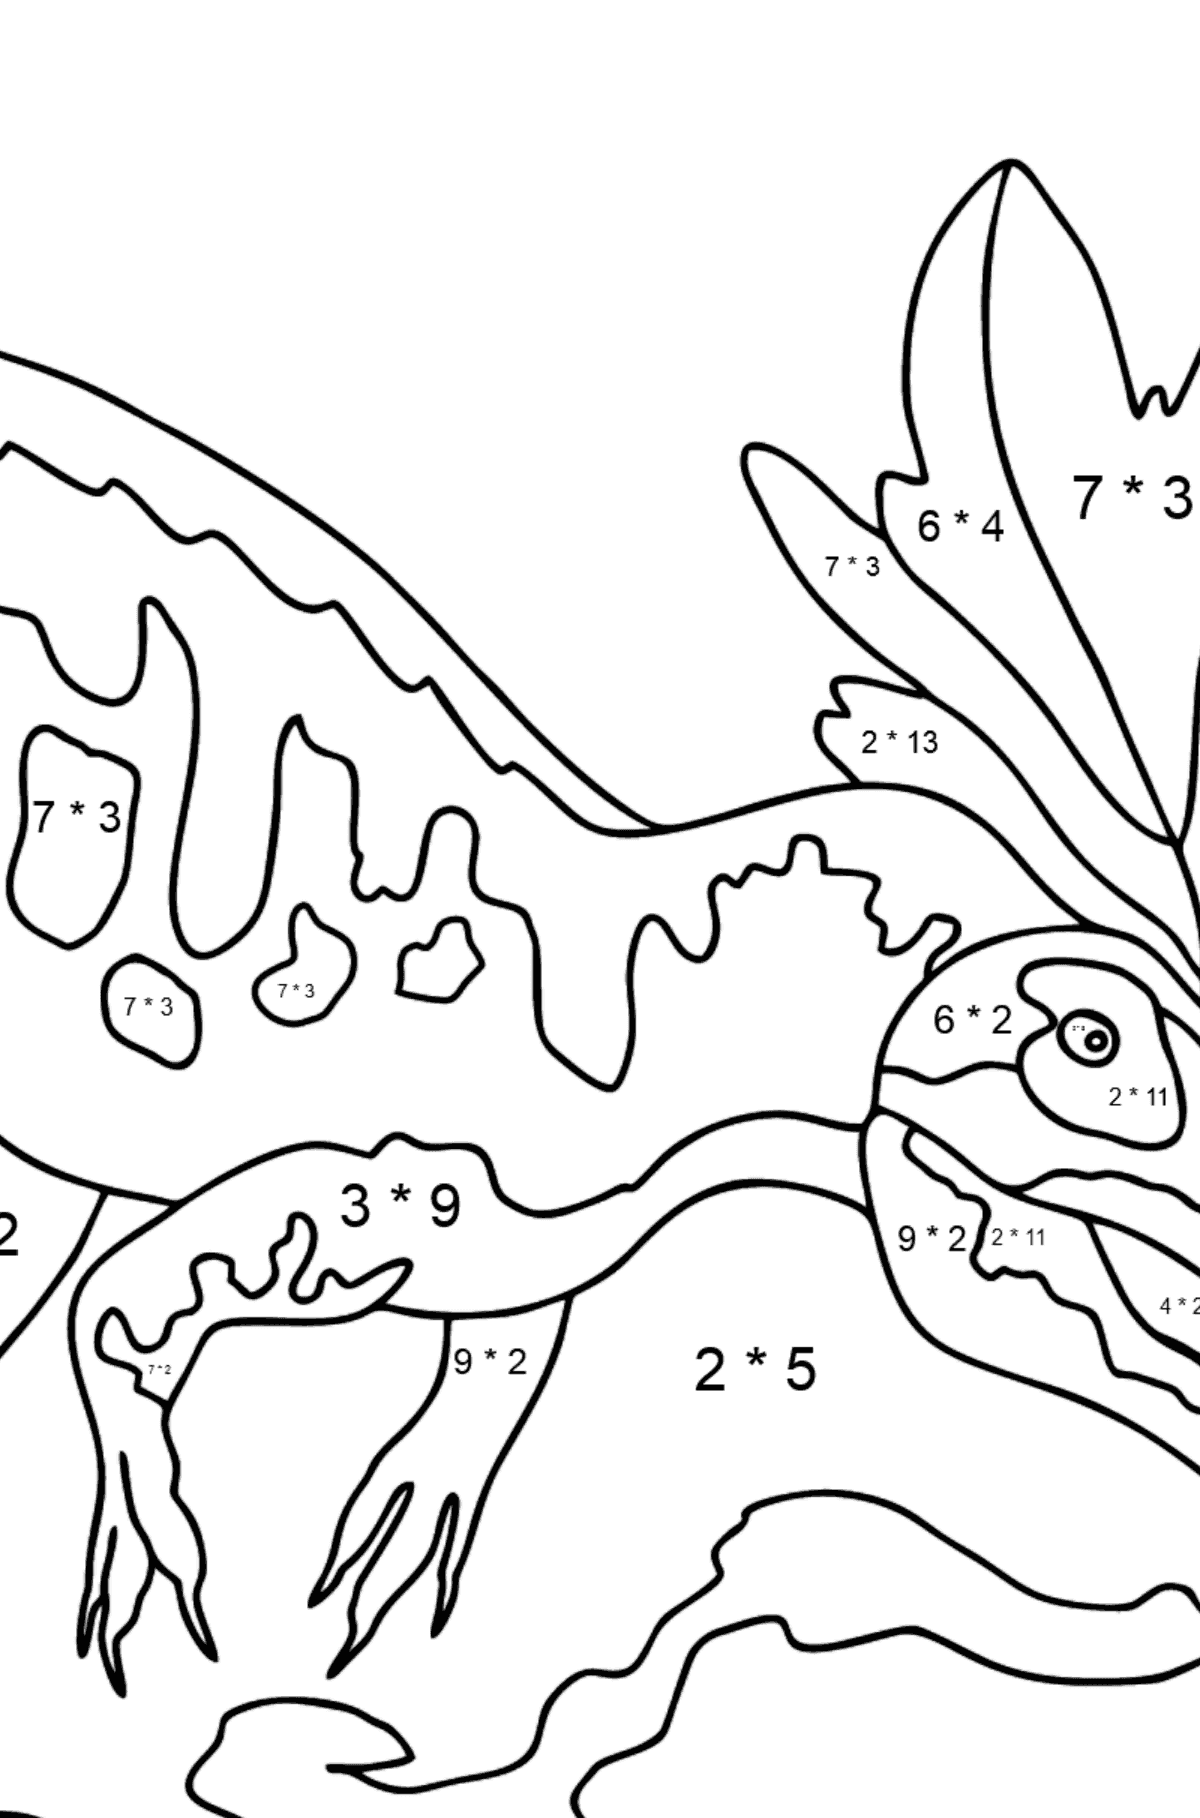 Desenho para colorir Allosaurus (difícil) - Colorindo com Matemática - Multiplicação para Crianças